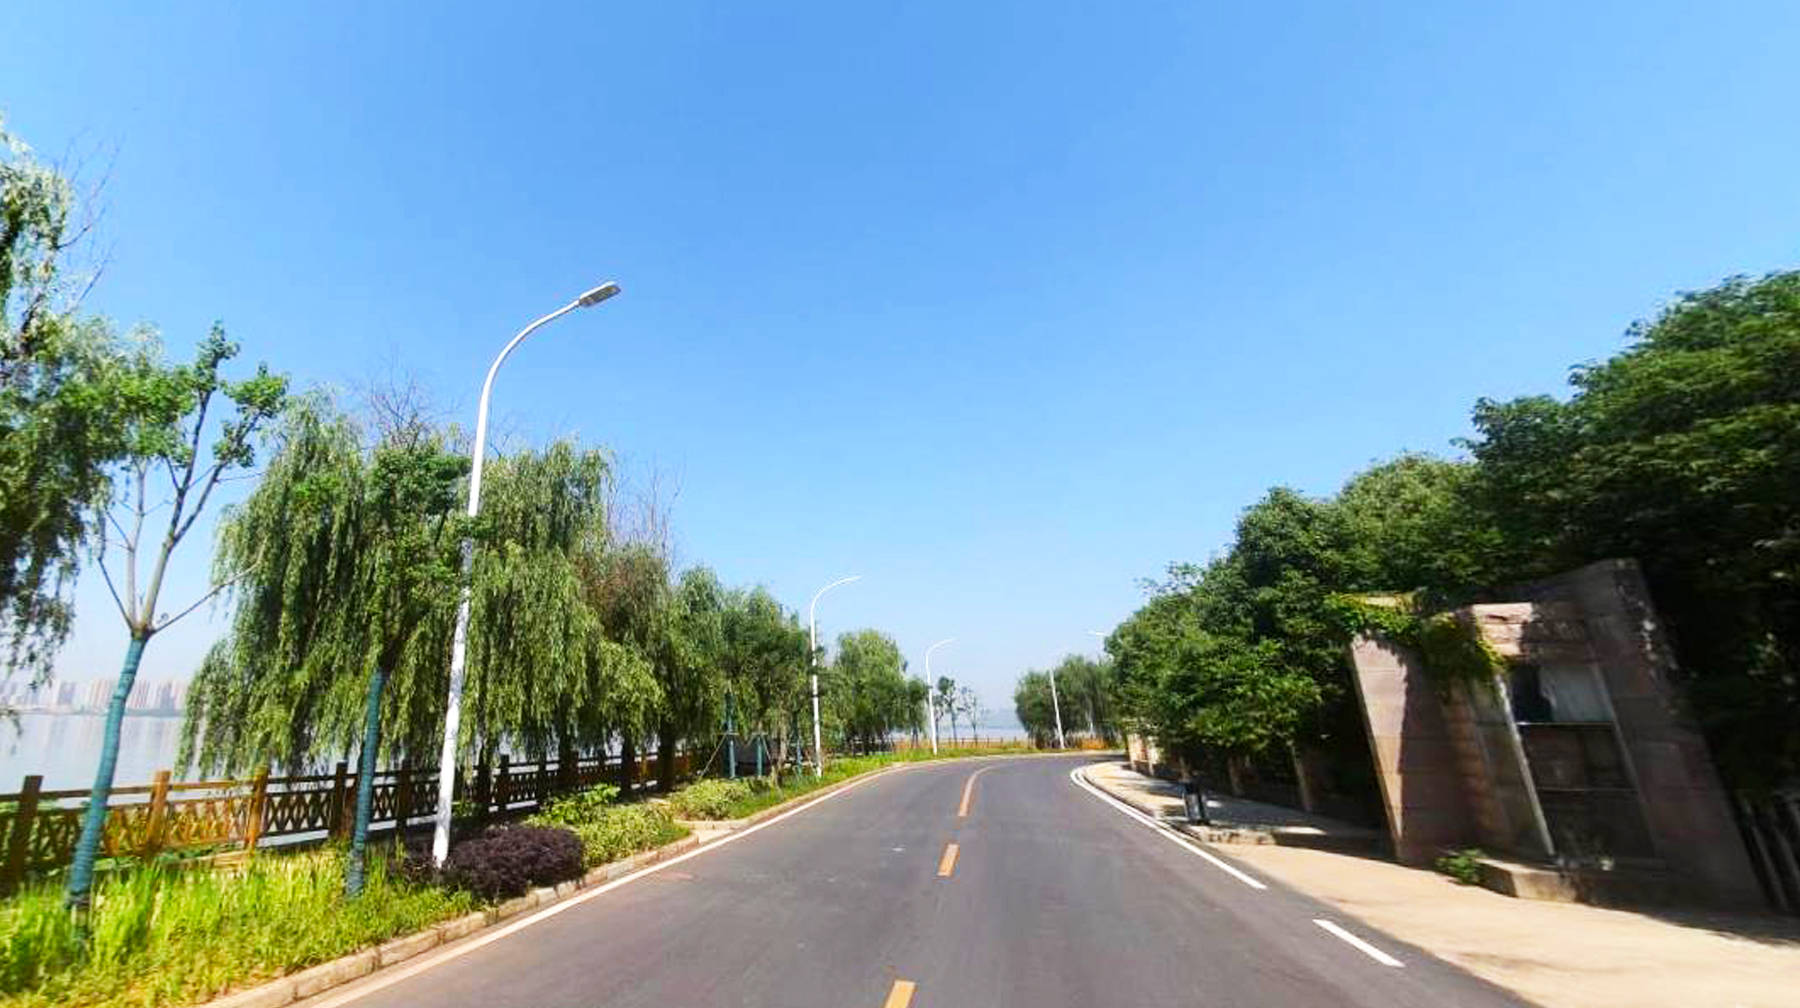 游览武汉郊区梅南西路:在第一大城中湖畔,看到山和海的界限